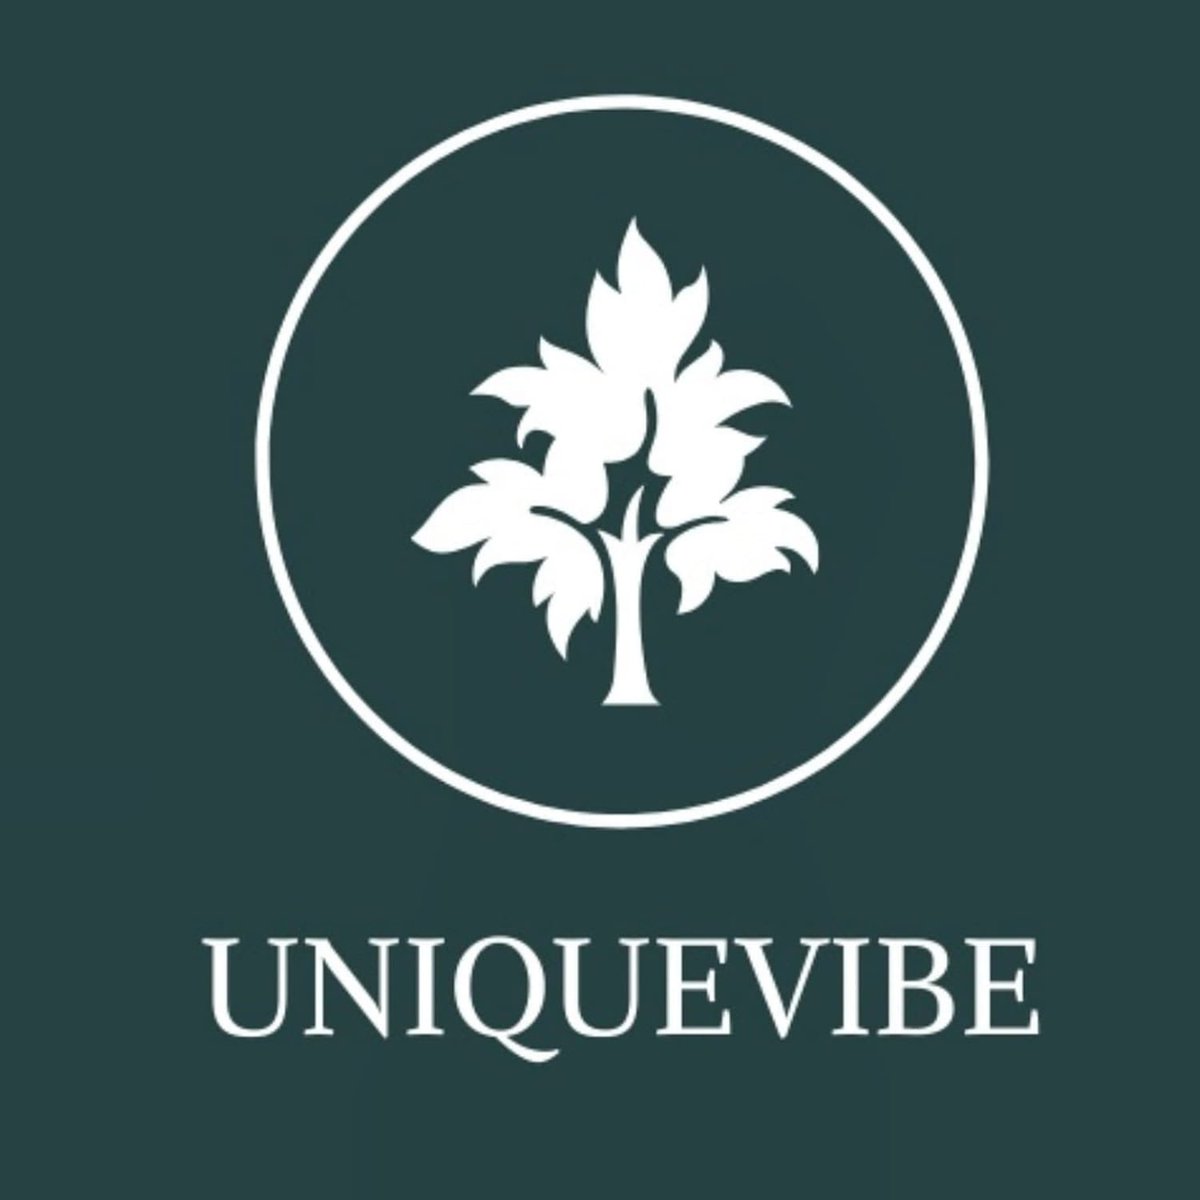 #Uniquevibe by Uniquevibe Pty Ltd